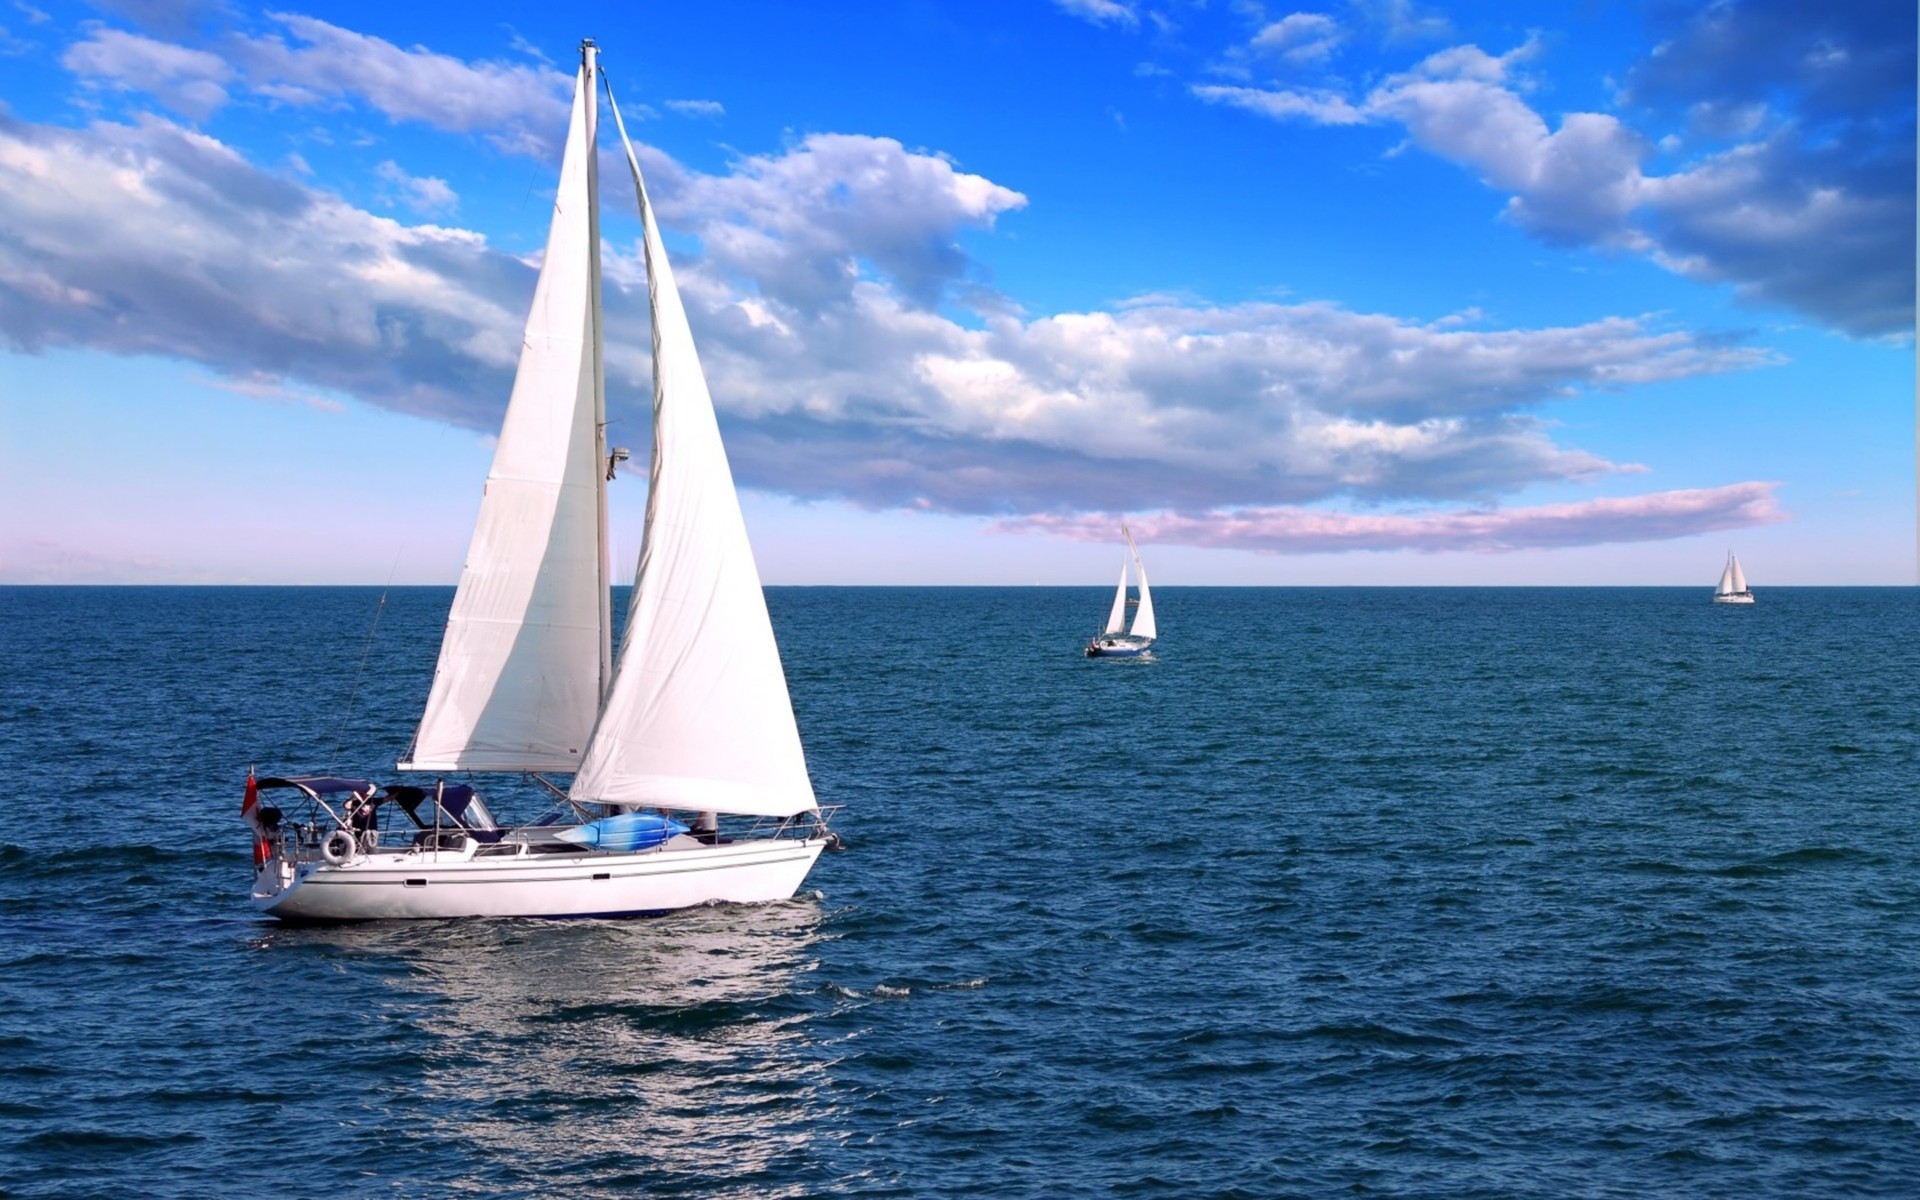 Biển và thuyền buồm tạo nên một khung cảnh đẹp và thư giãn. Hãy xem hình ảnh này để bạn có thể được thư giãn và cảm thấy những giây phút yên tĩnh.